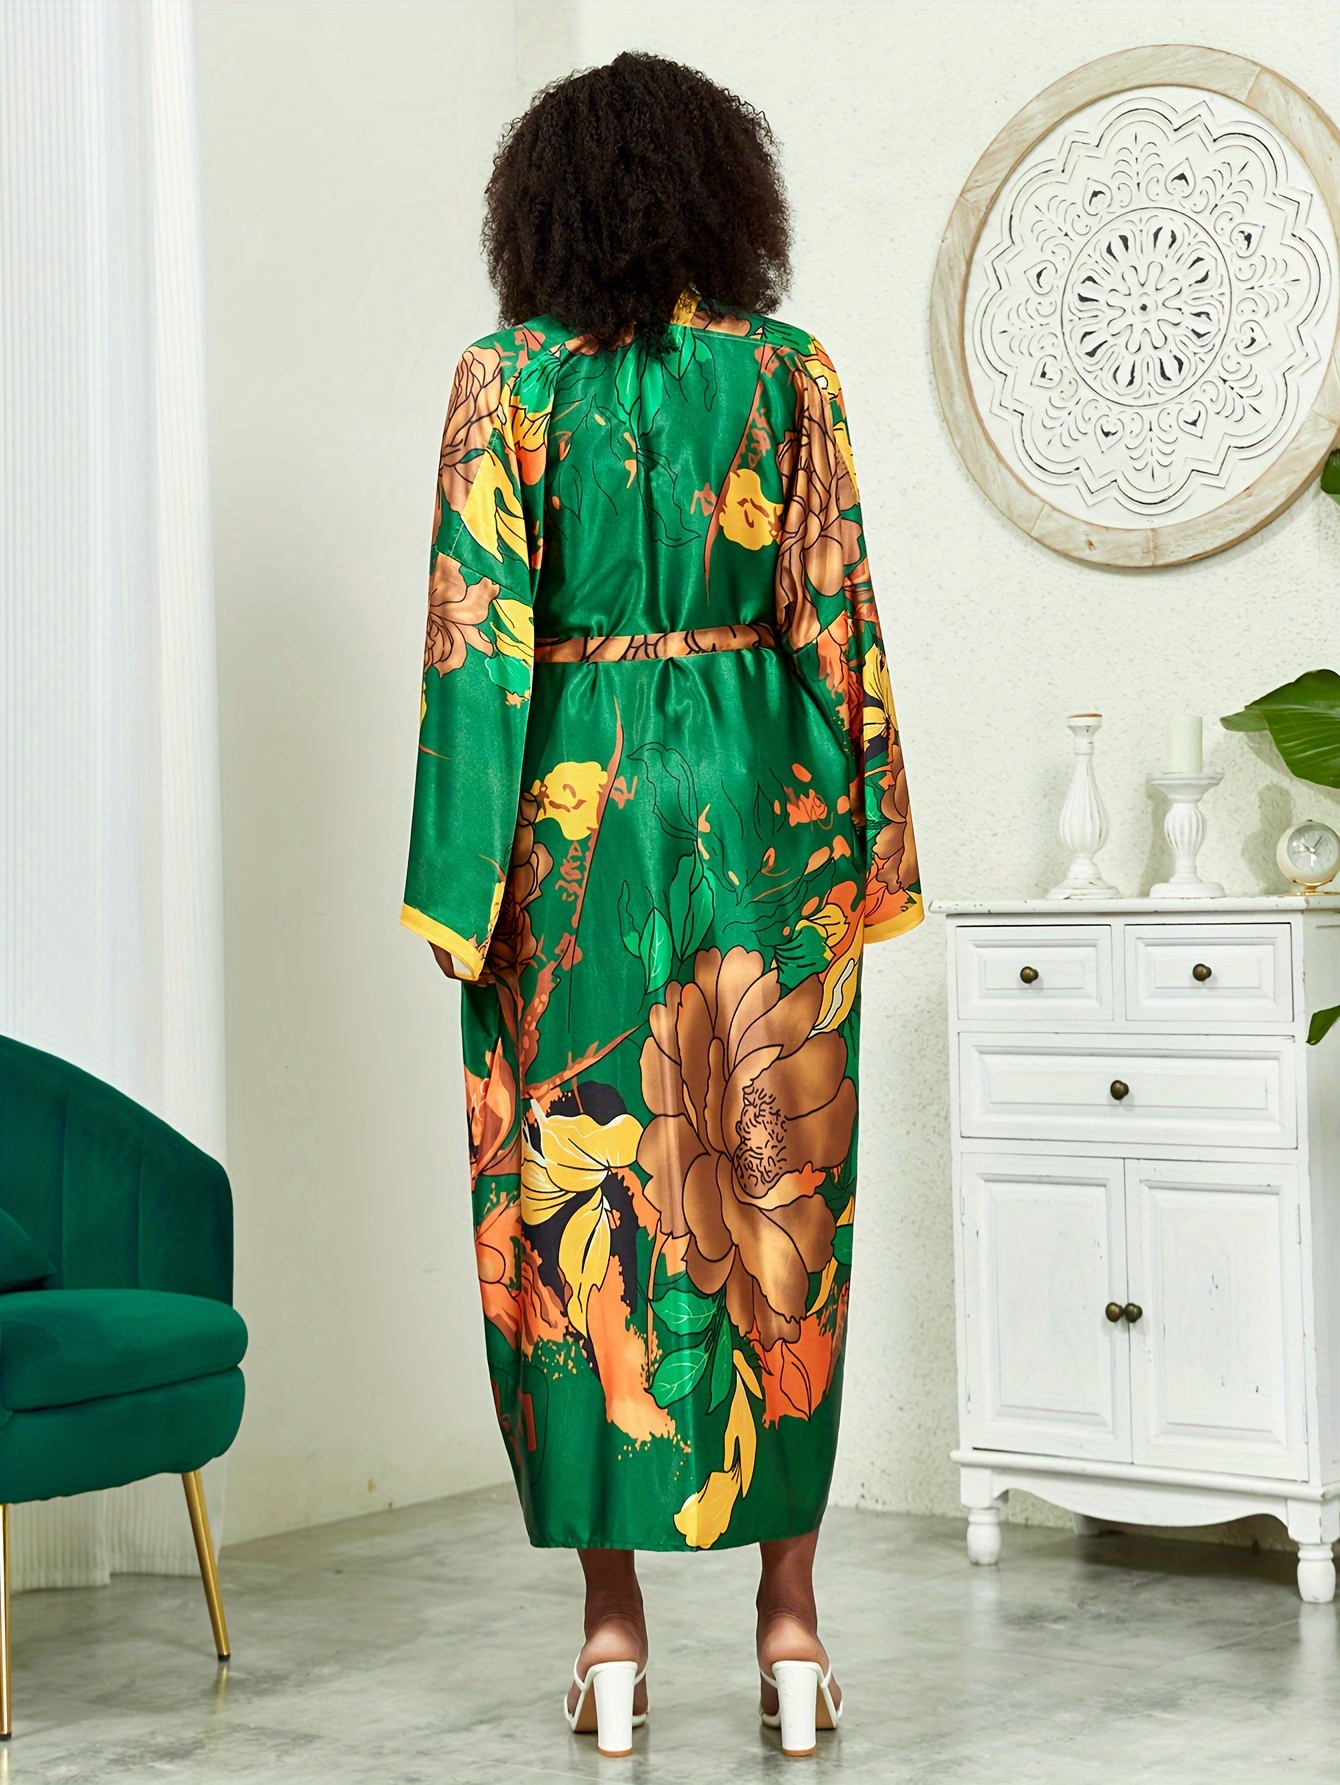 Terra & Sky Women´s Plus Size 1X Floral Printed Kimono and Green